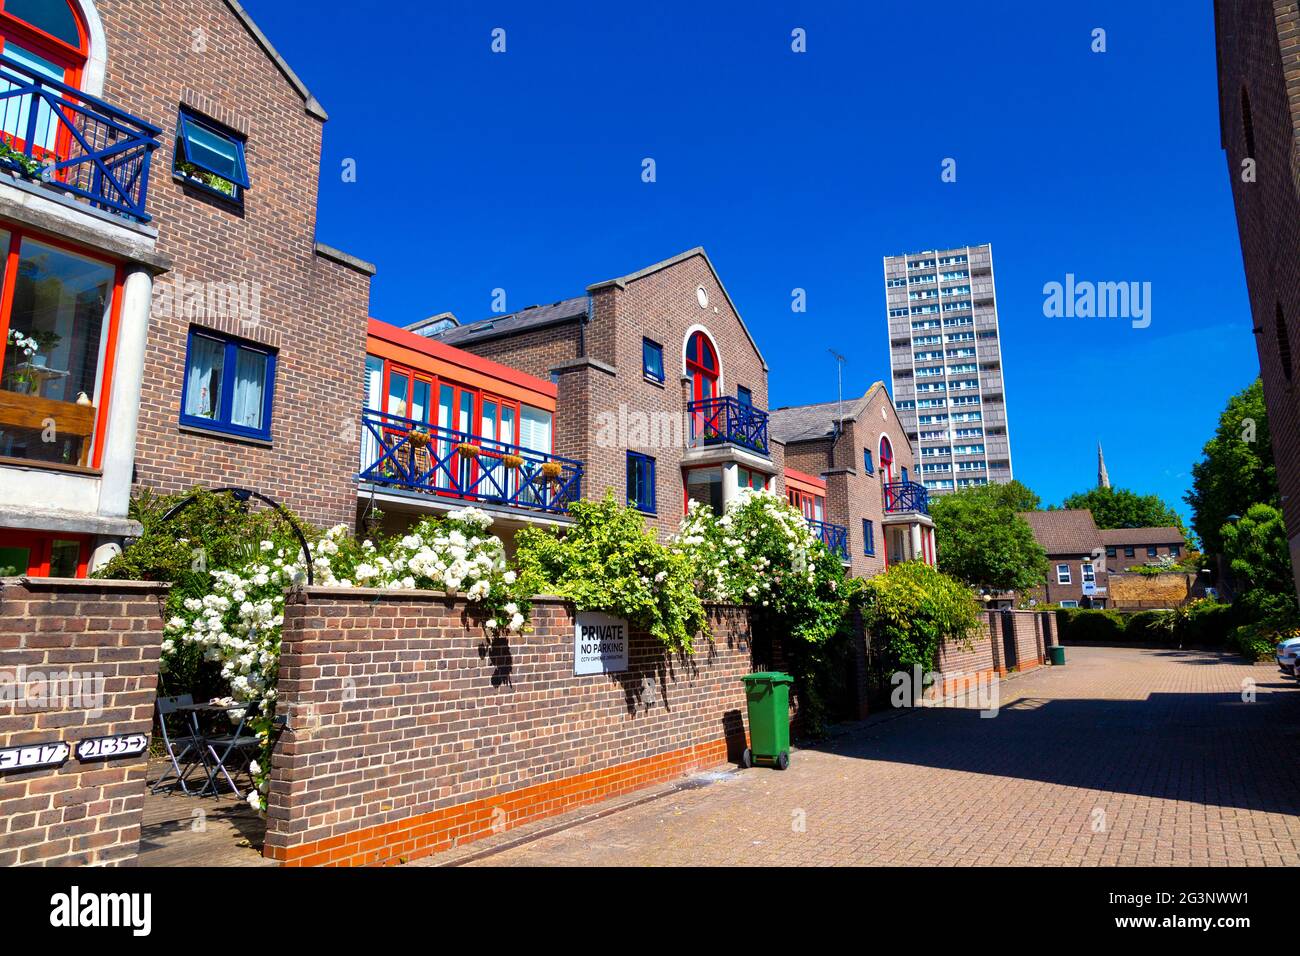 Ziegelhäuser mit Blick auf das Shadwell Basin in der Peartree Lane, Wapping, London, Großbritannien Stockfoto